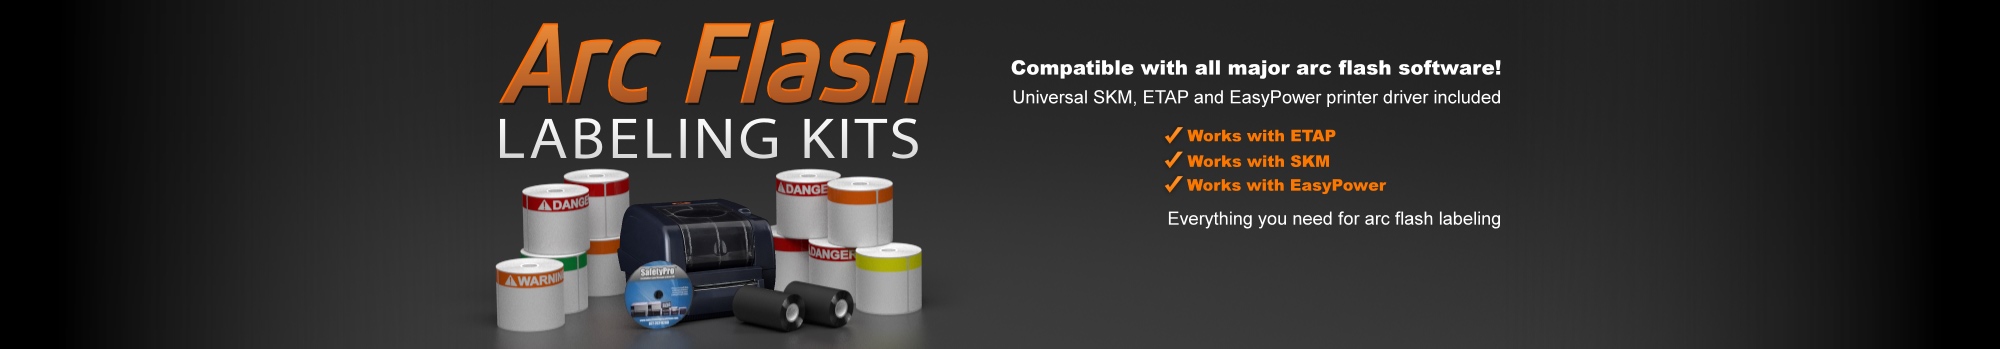 Arcflash Labeling Kits